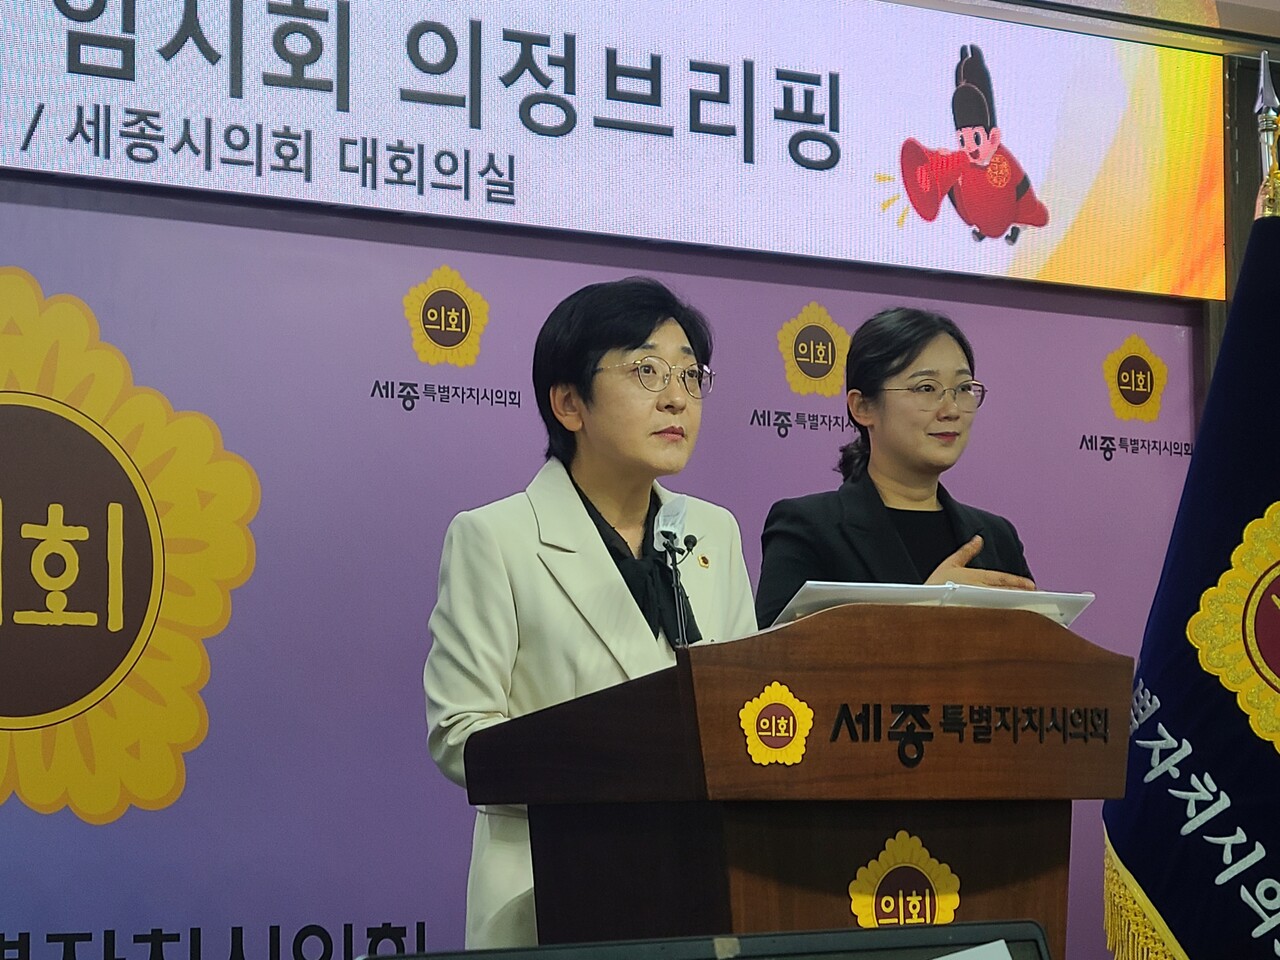 이순열 세종시의회의장이 23일 오후 열린 의정브리핑에서 이번 임시회 운영 방향에 대해 설명하고 있다. 한지혜 기자.